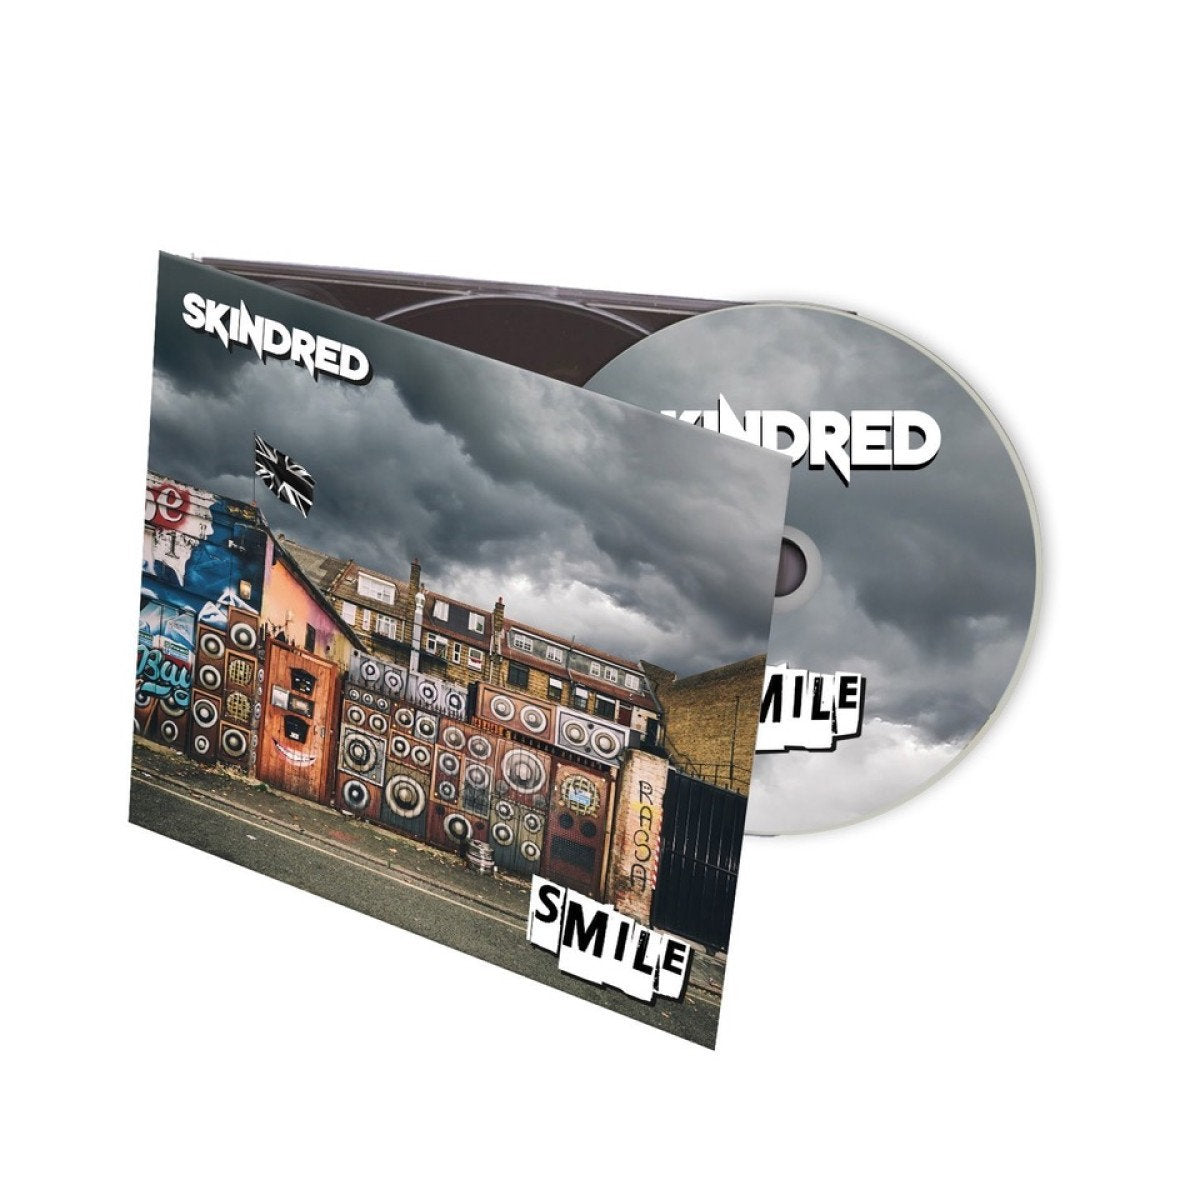 Skindred "Smile" Digipak CD & Download